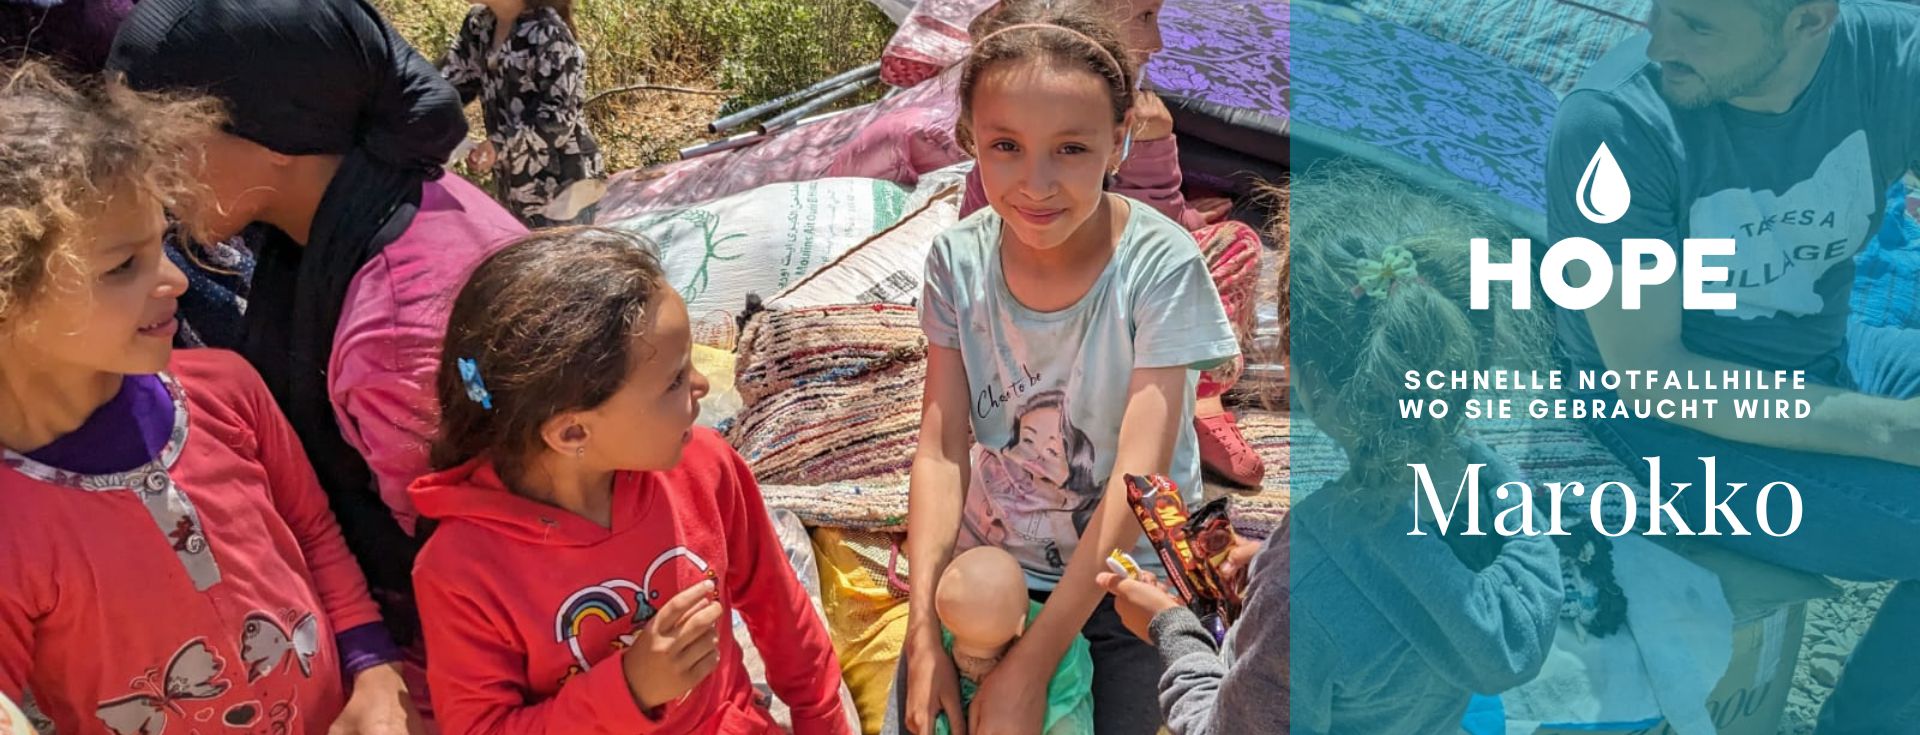 Marokko, Schnelle Hilfe, Opfern helfen, Marokkinern Helfen, Erdbeben, schnelle Hilfe